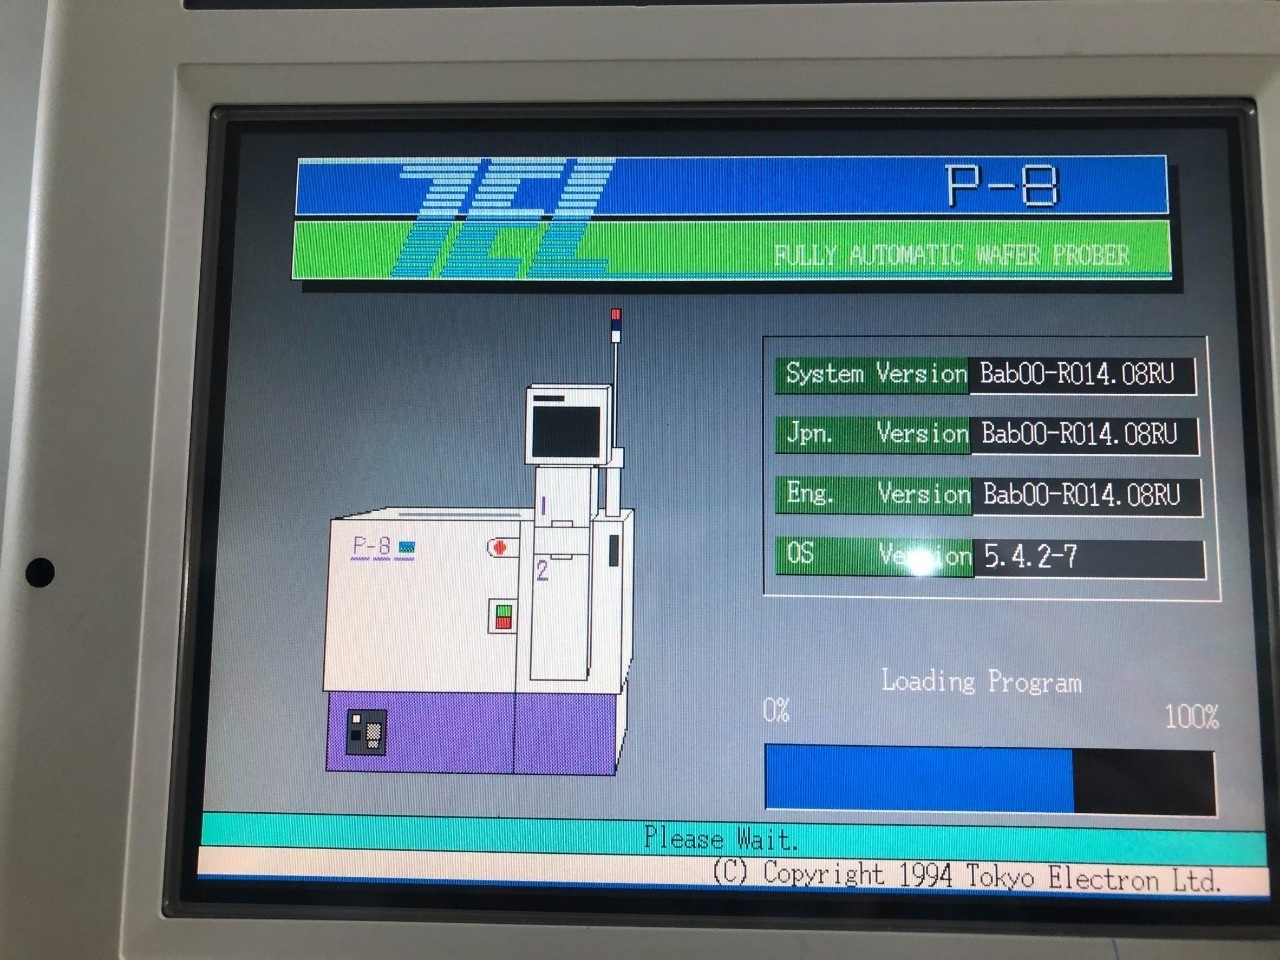 TEL Tokyo Electron P8XLm